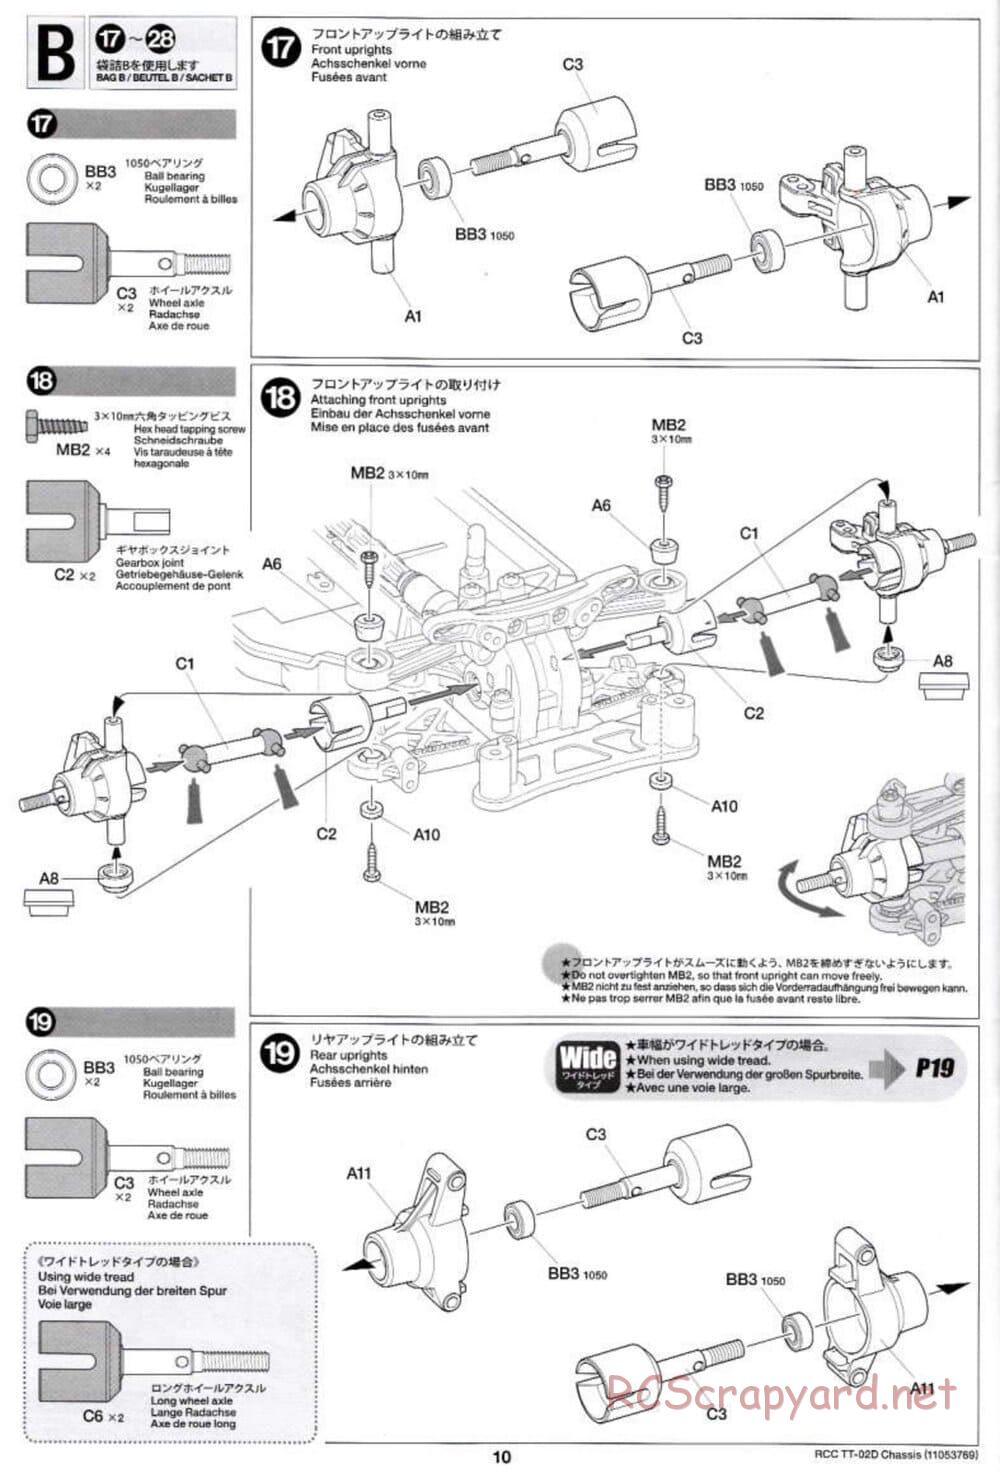 Tamiya - TT-02D Chassis - Manual - Page 10